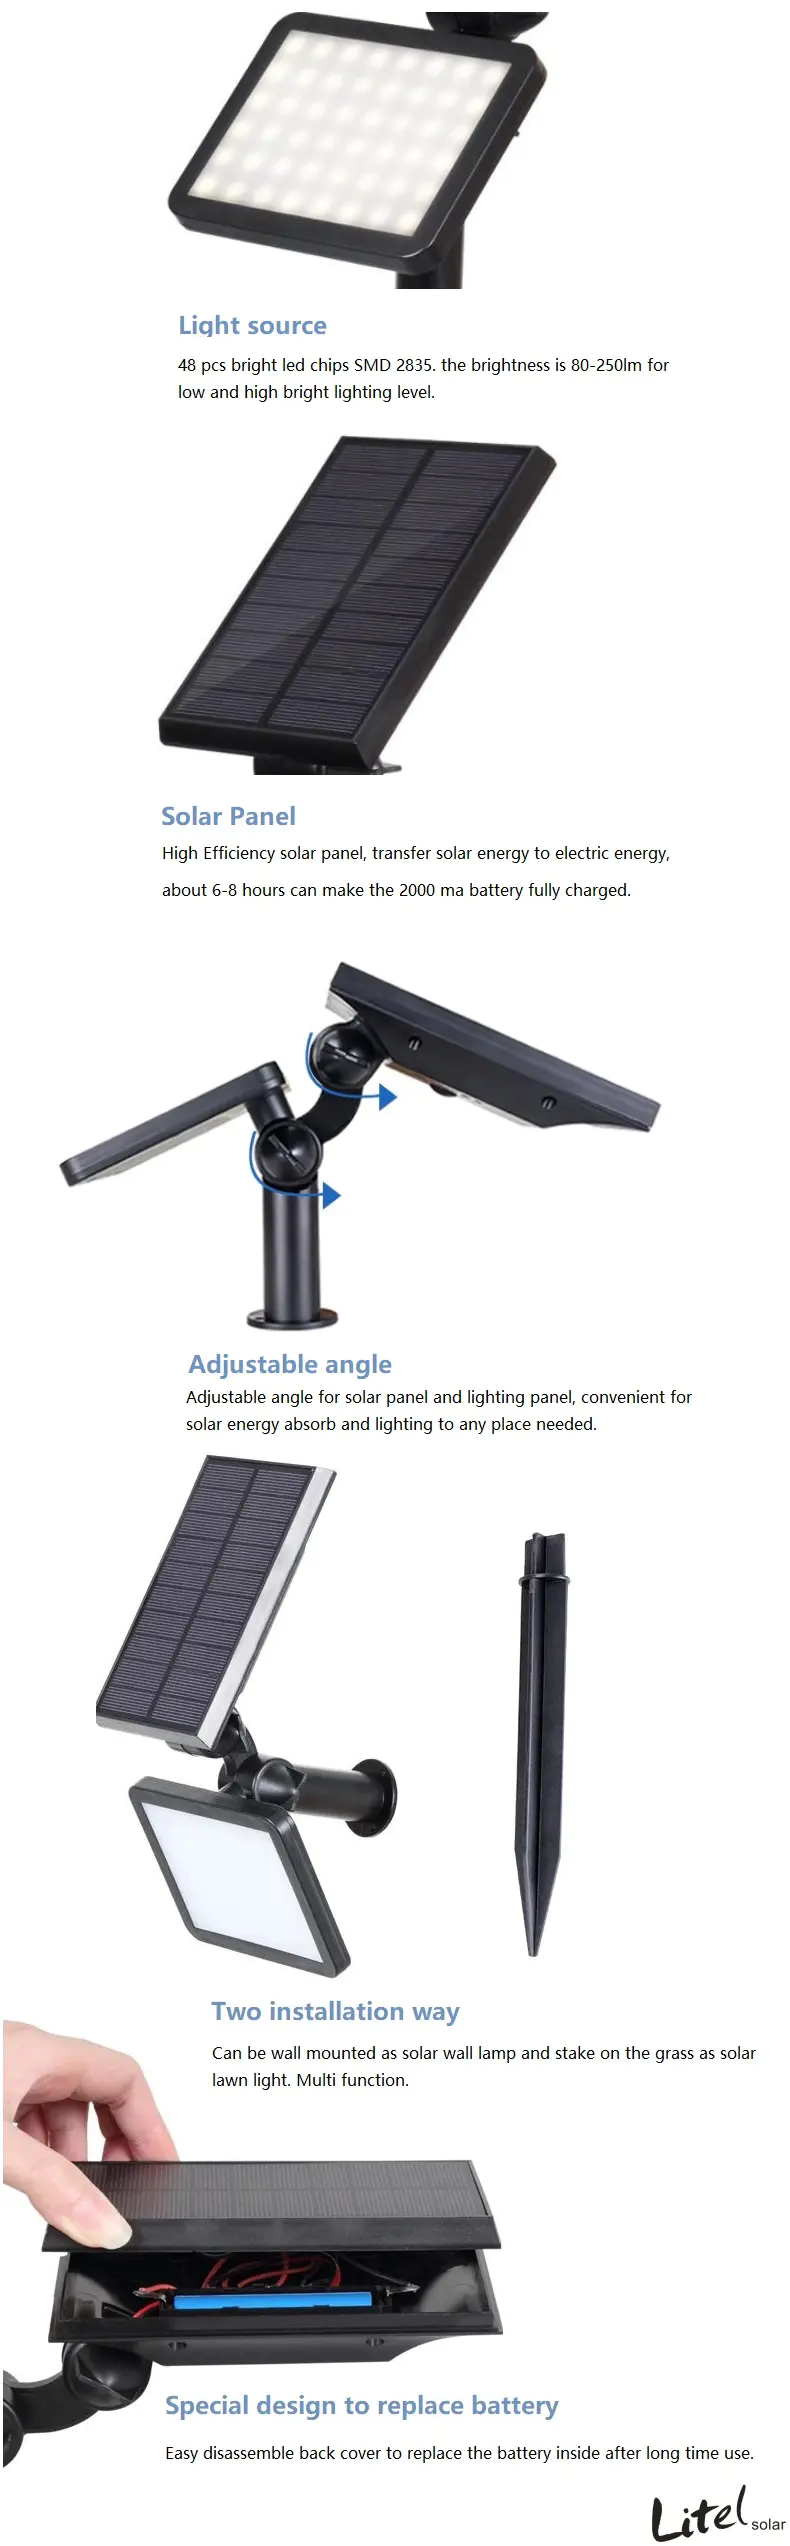 Litel Technology solar best solar garden lights lights for landing spot